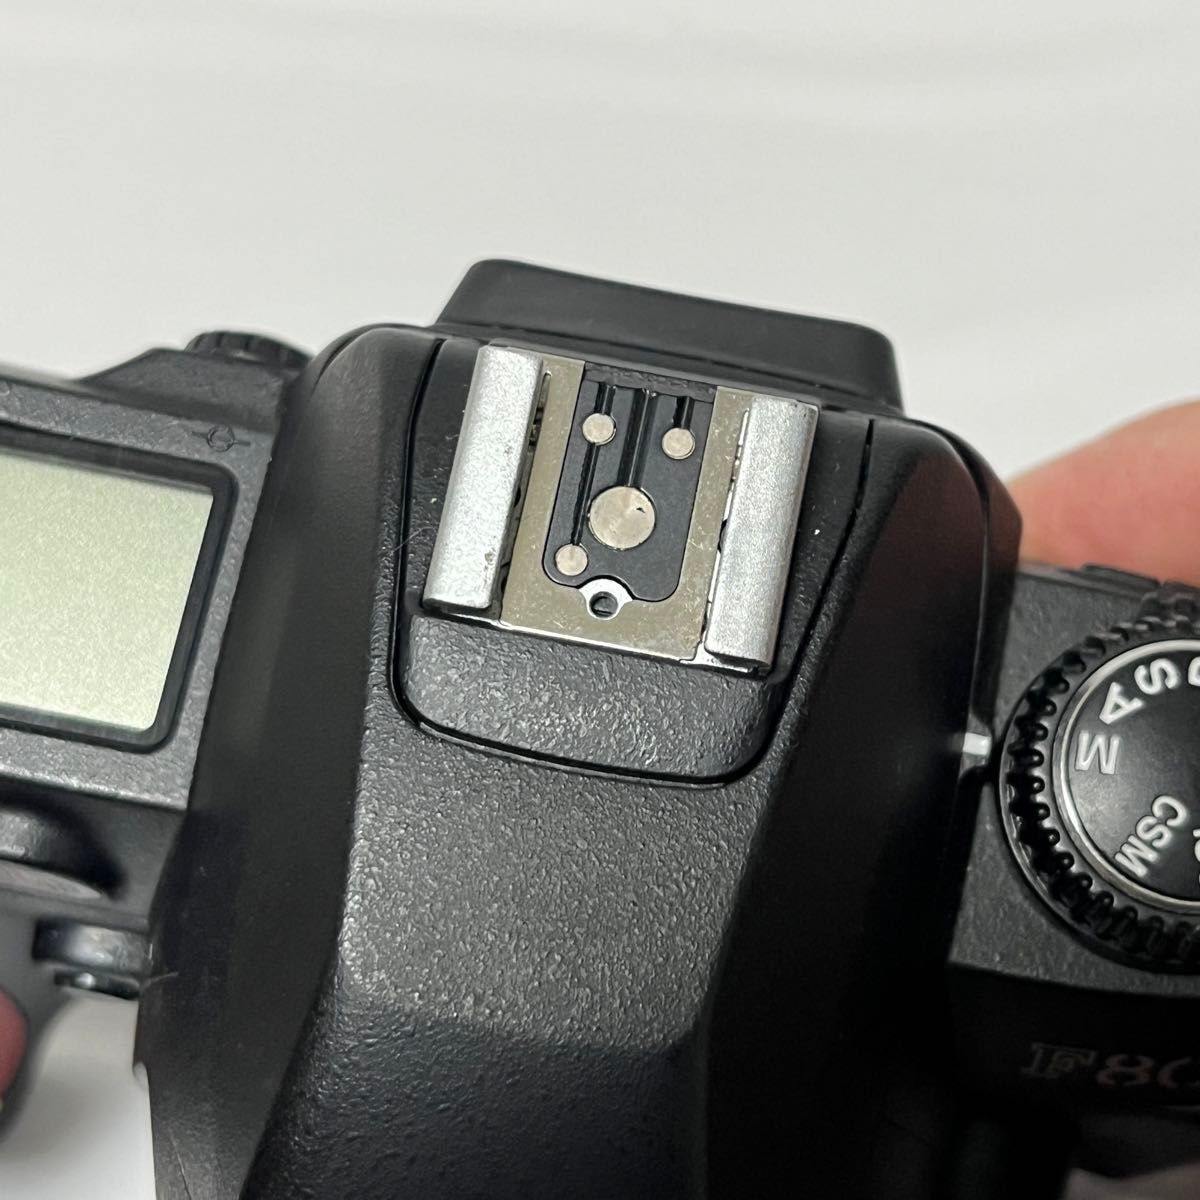 GW値下げセール【24-015-A】動作・美品 Nikon F80Dボディ本体